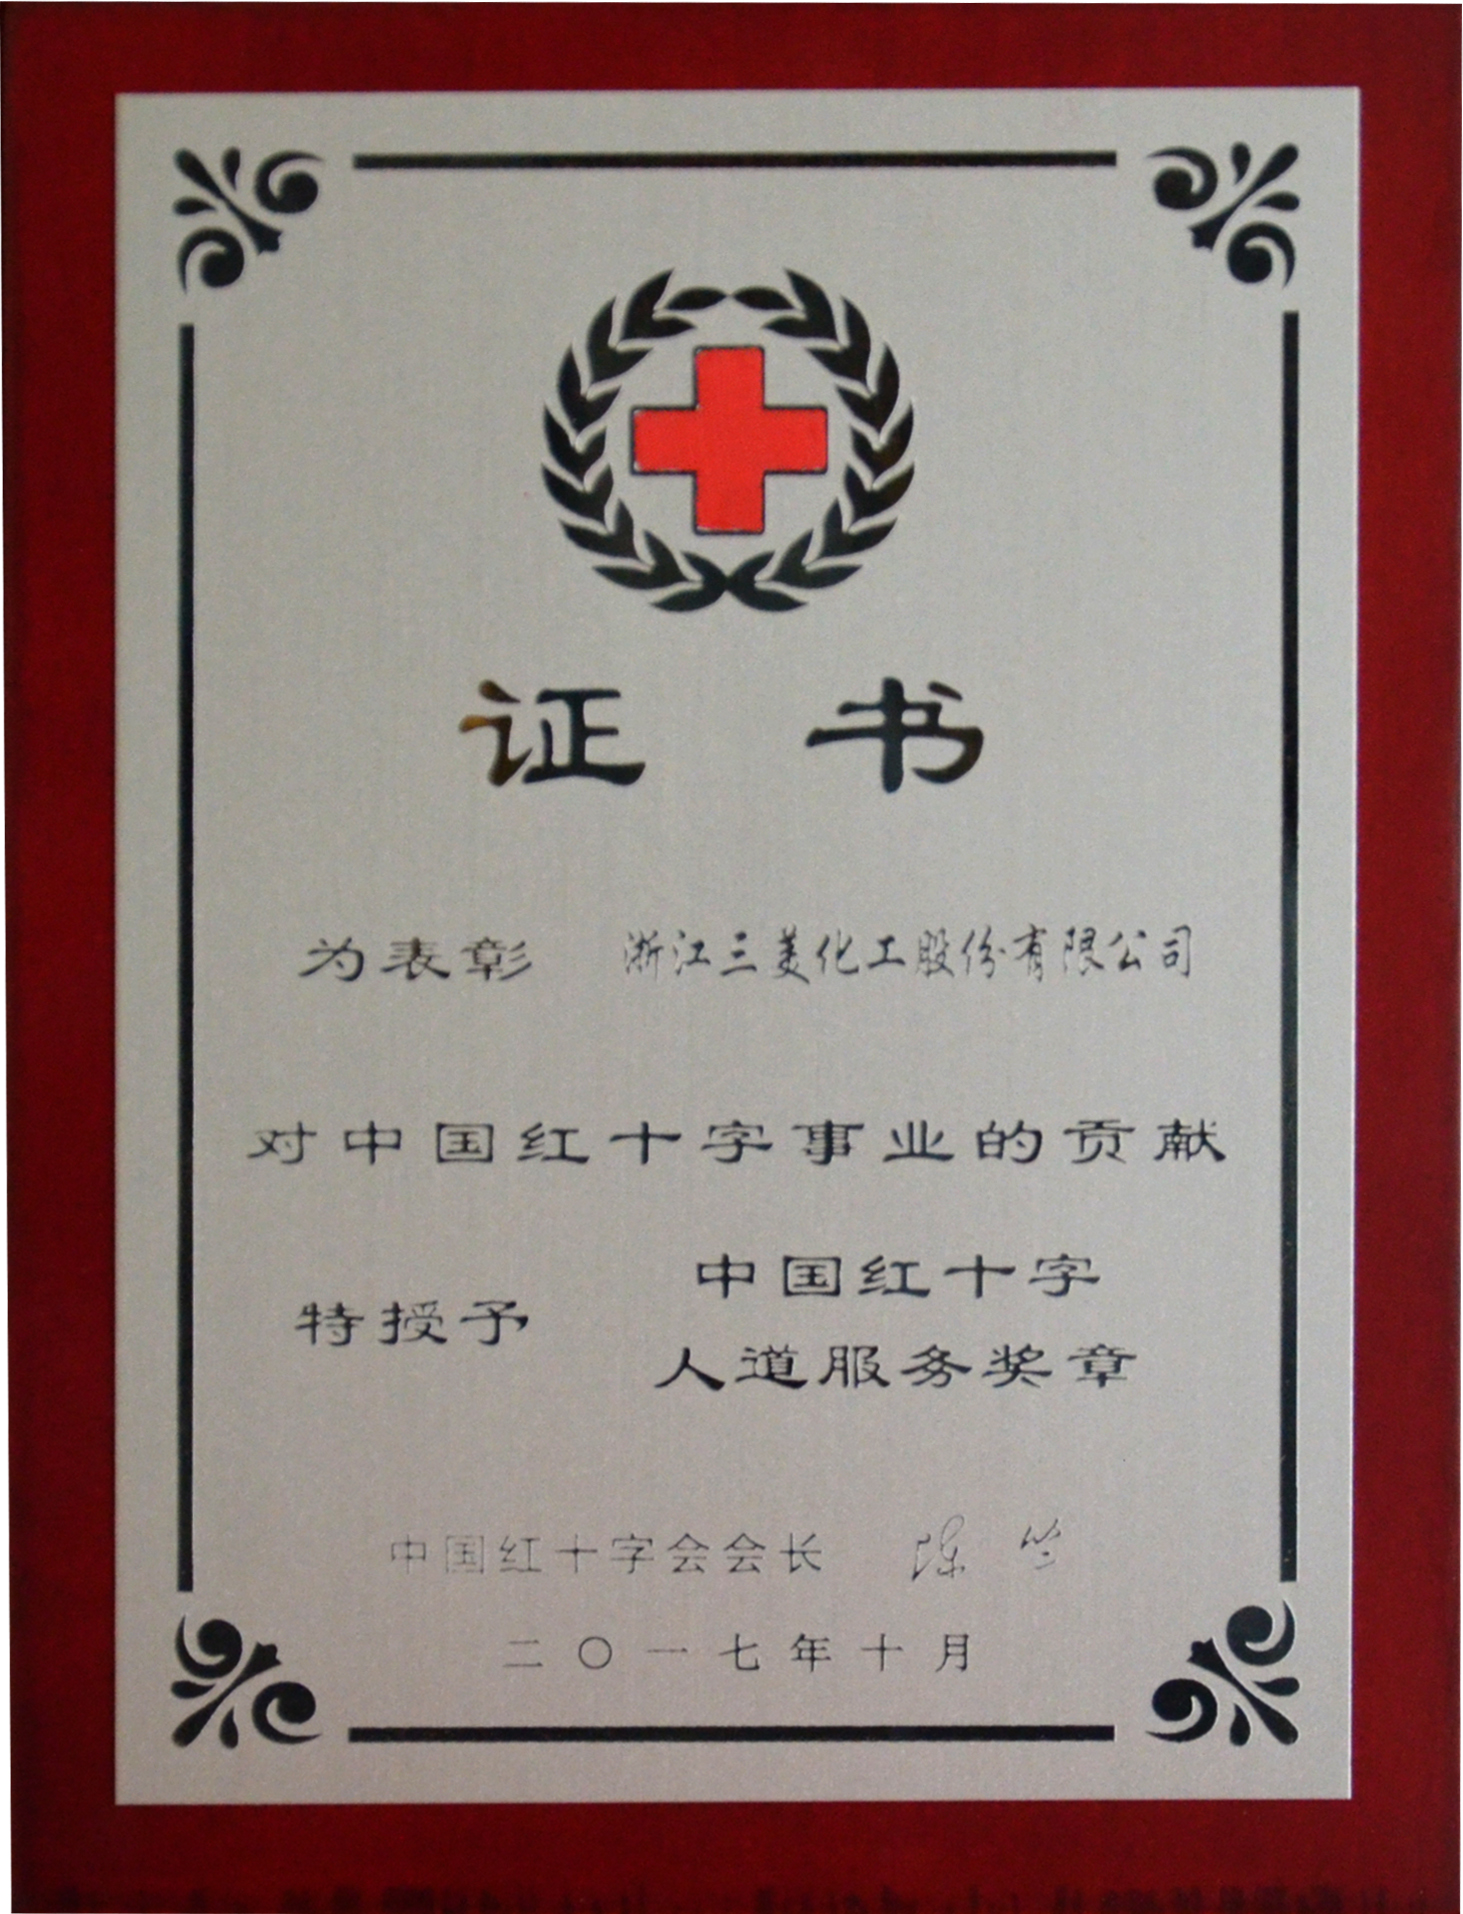 china red cross society award humanitarian service medal